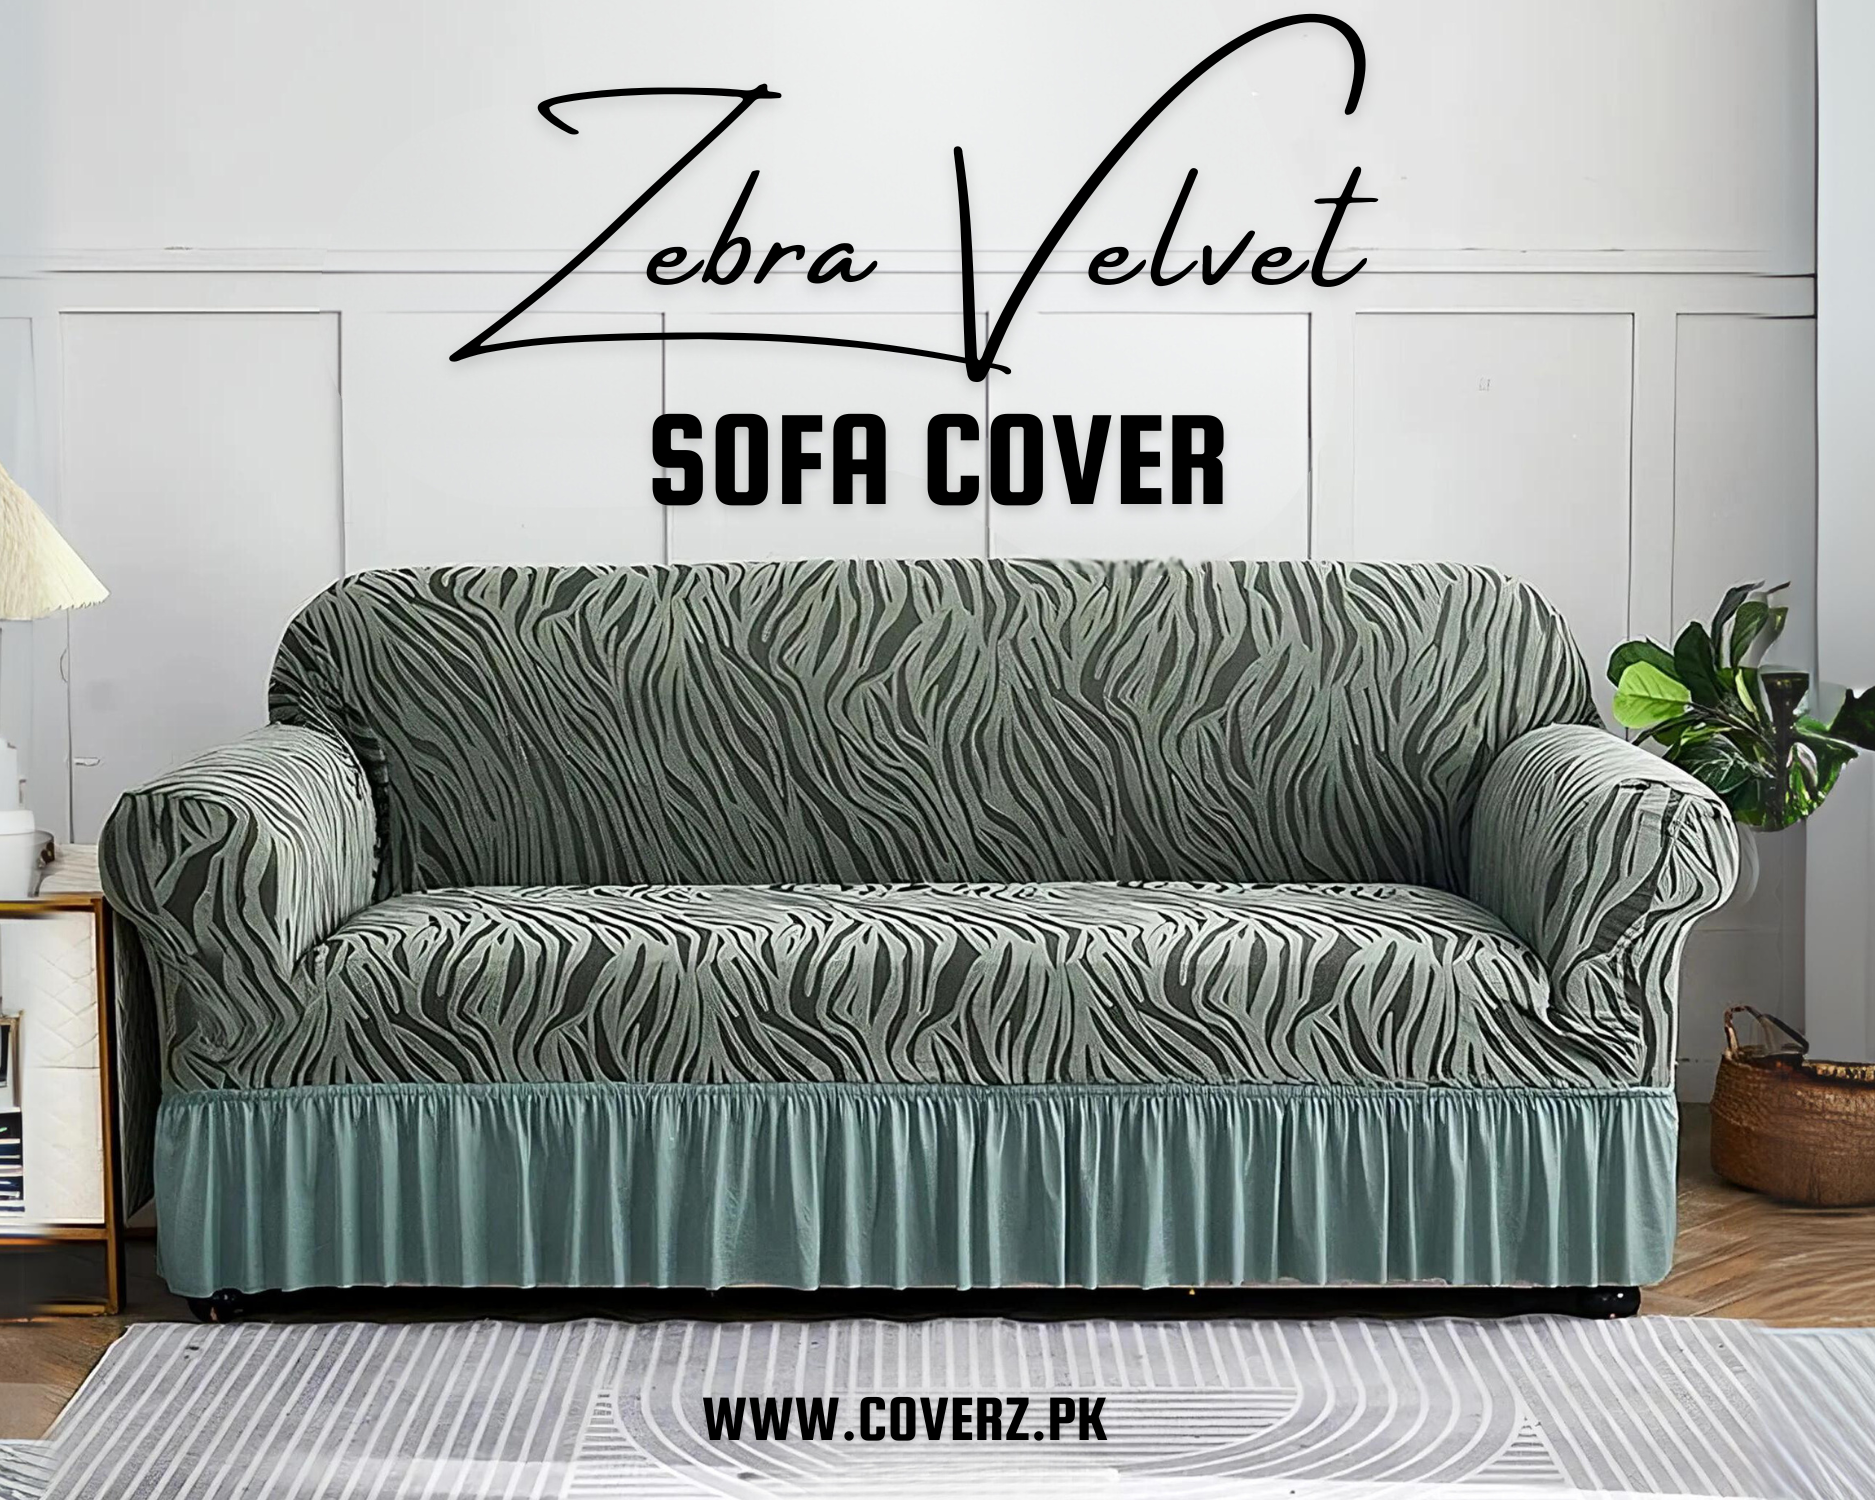 Zebra Velvet Turkish Sofa Cover